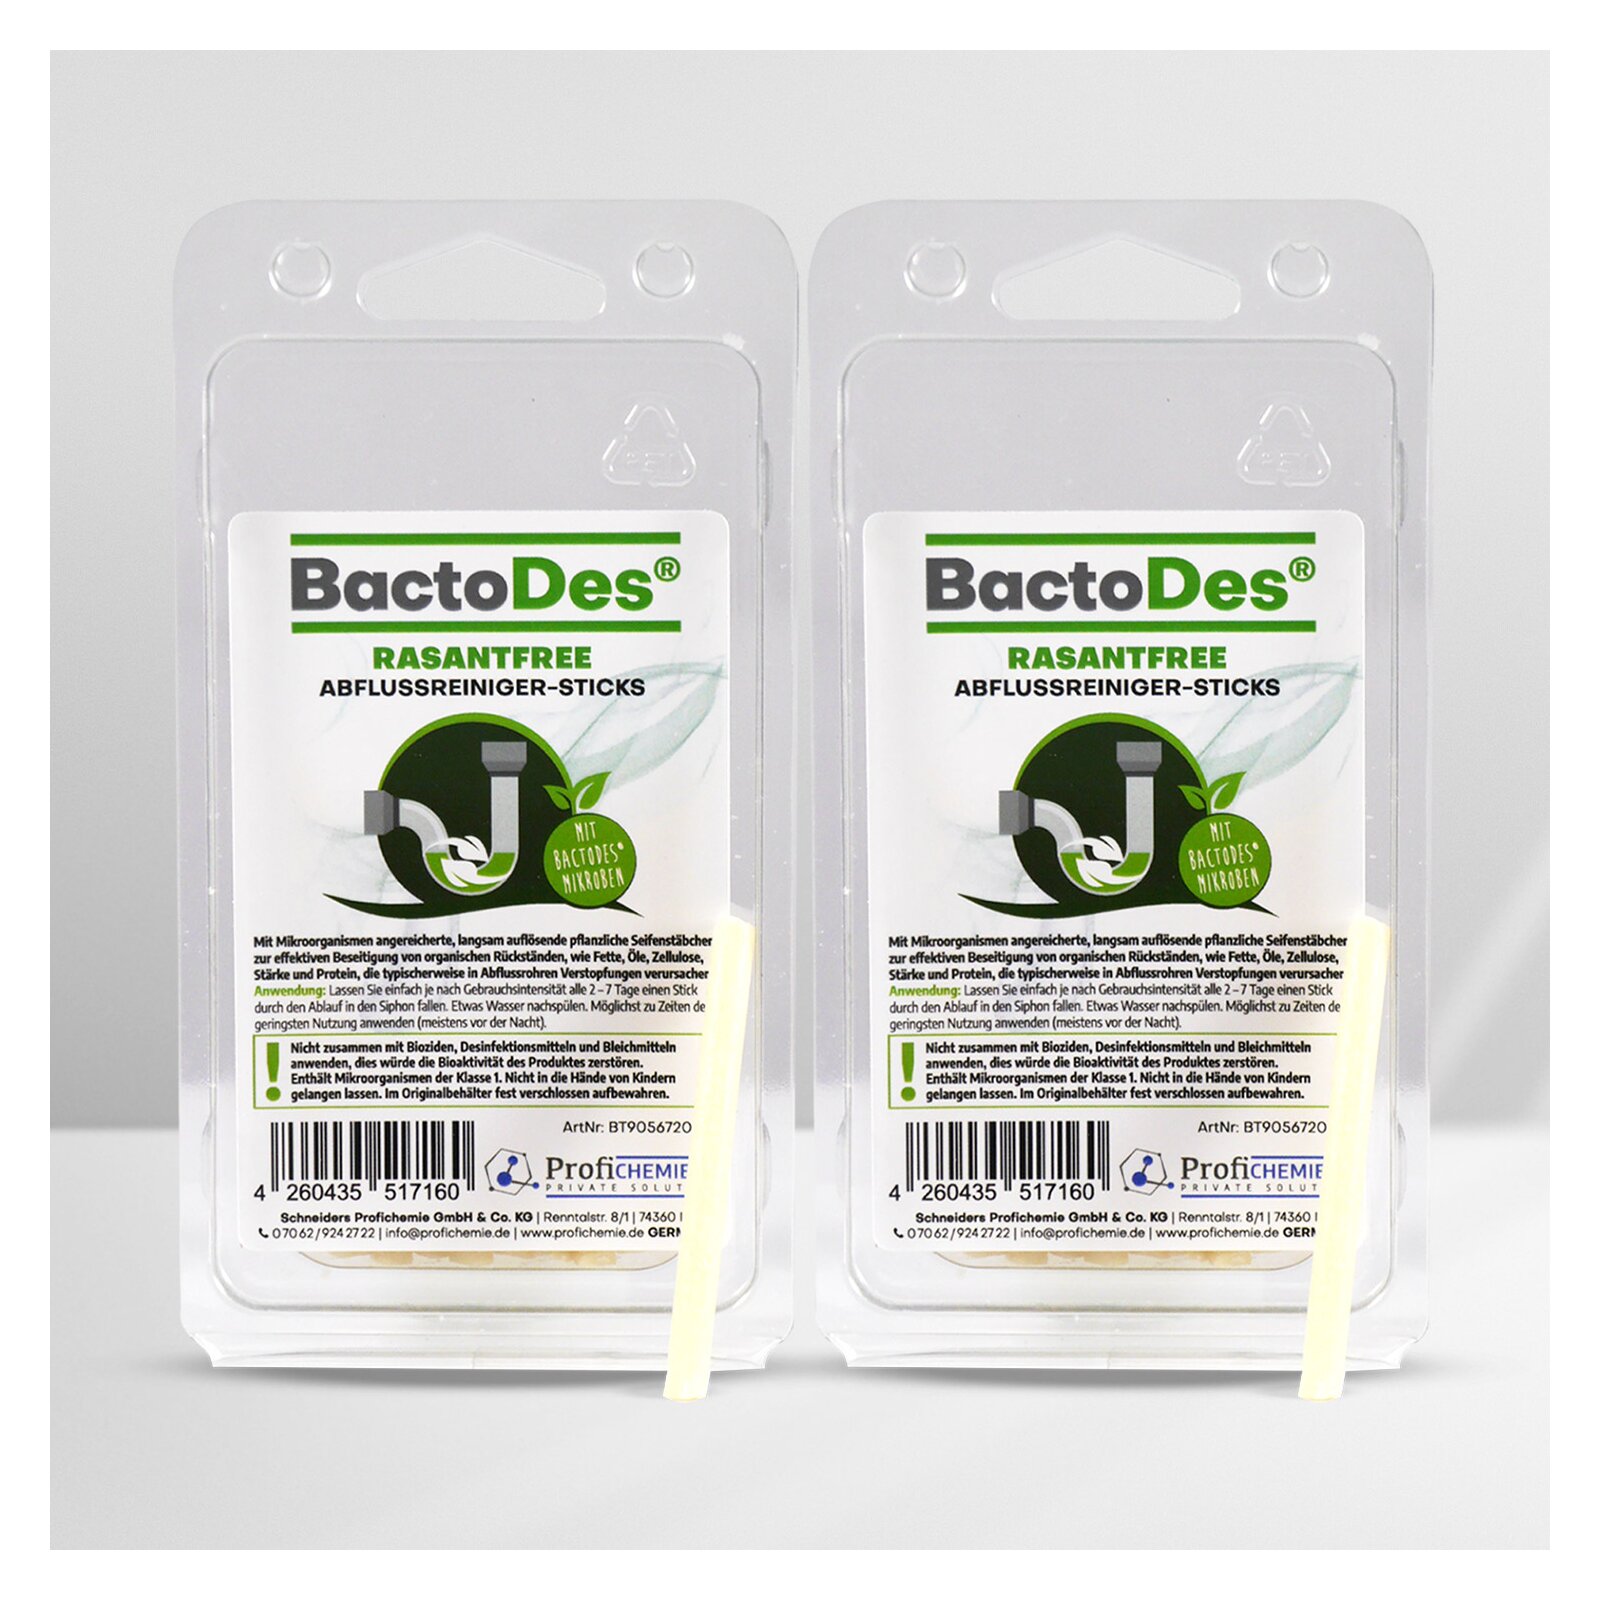 BactoDes(R) RasantFree AbflussreinigerSTICKS 2 Pack 20 SticksPack unter Kueche und Gastronomie